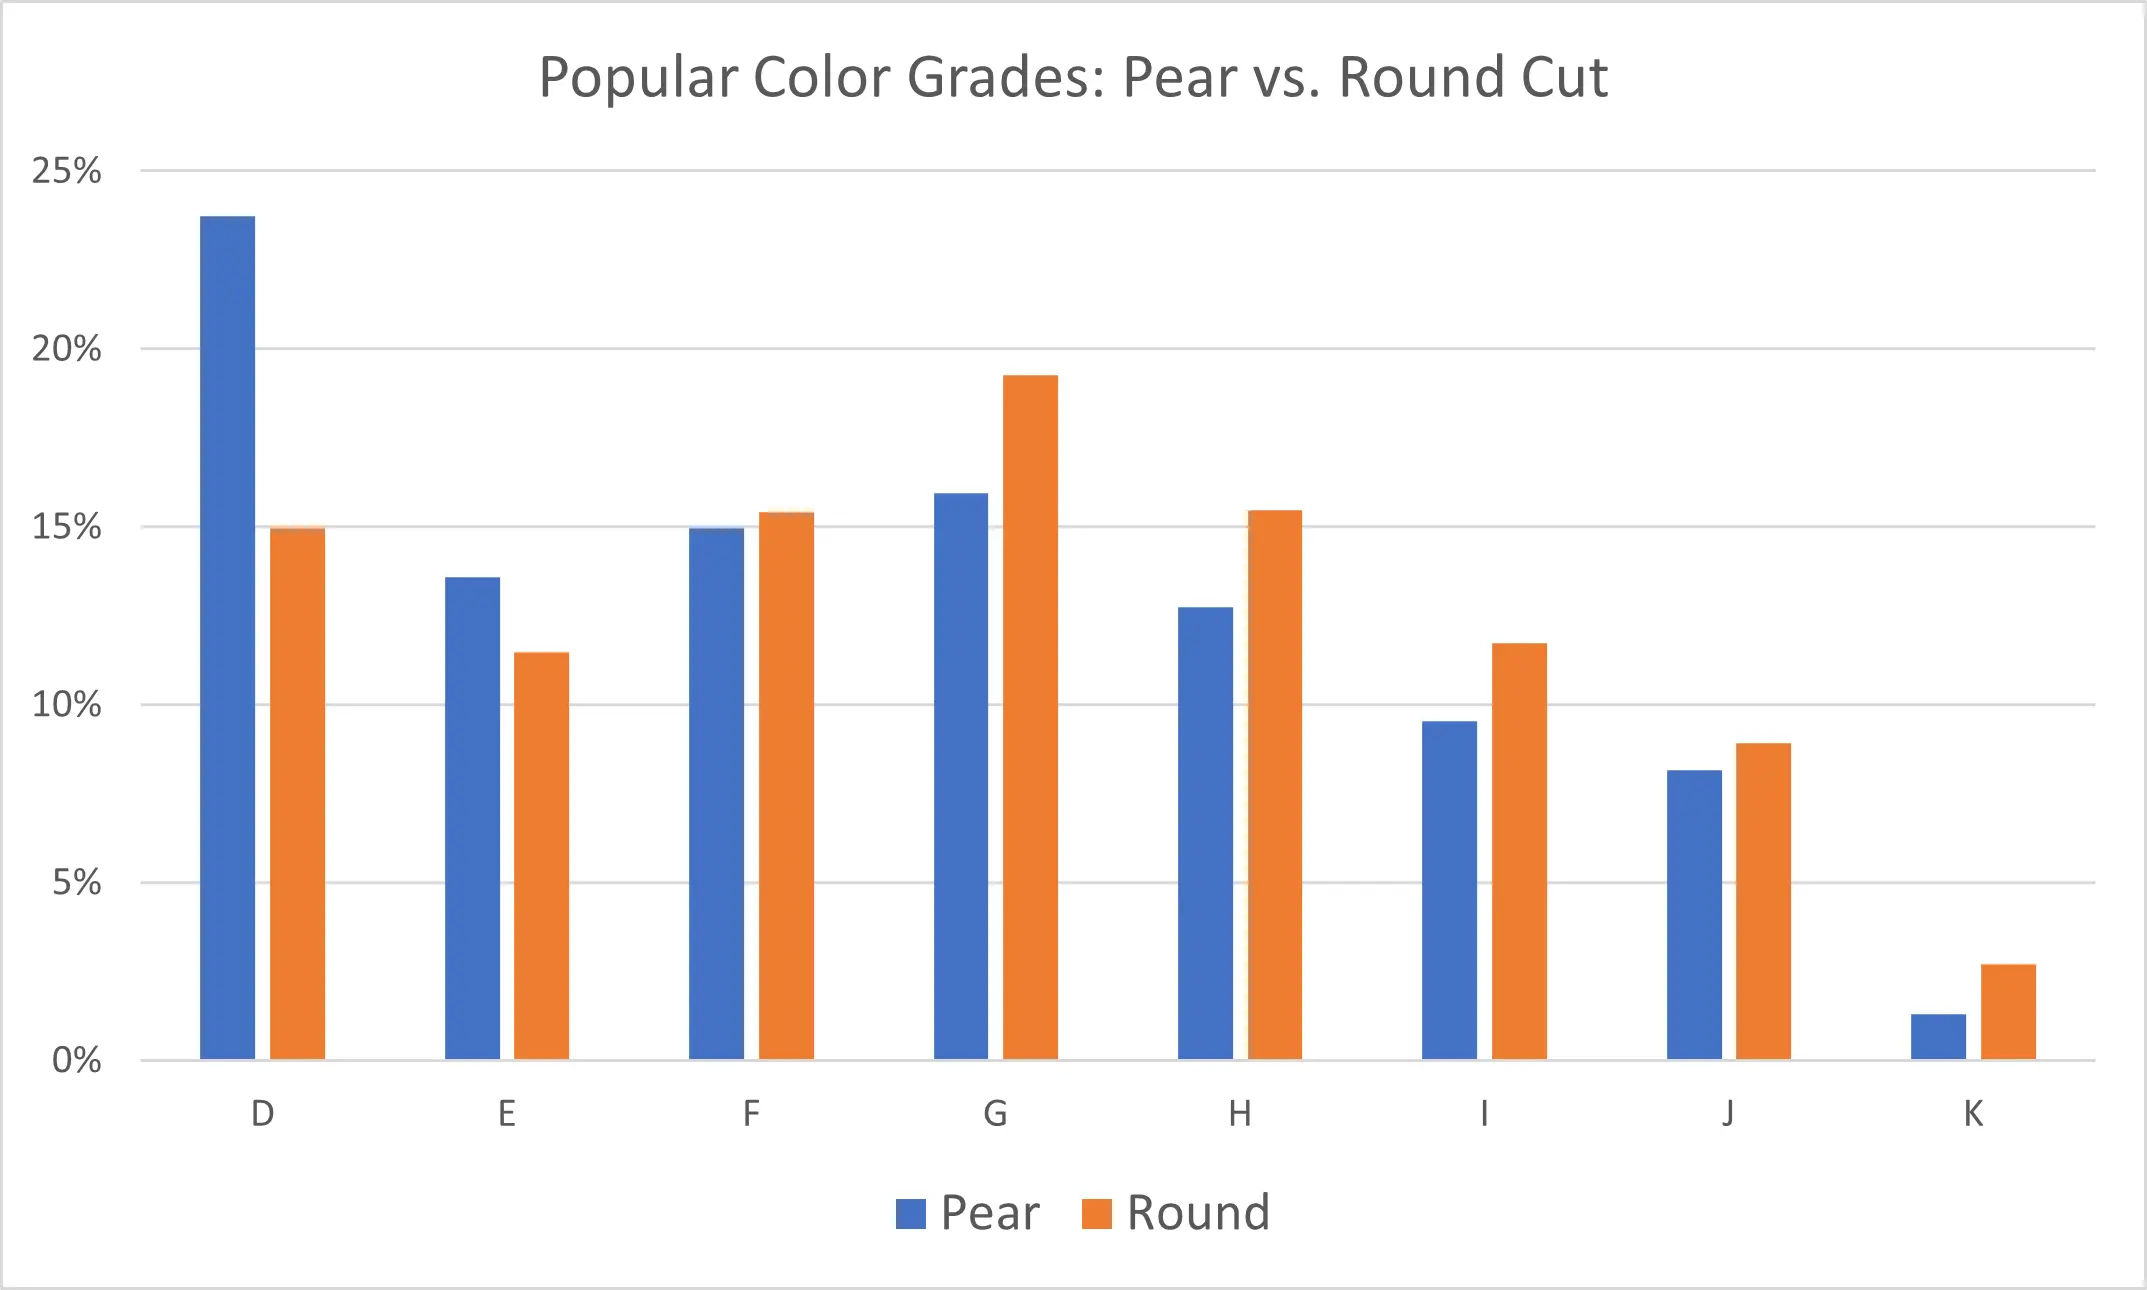 pear vs round cut diamonds by color grade